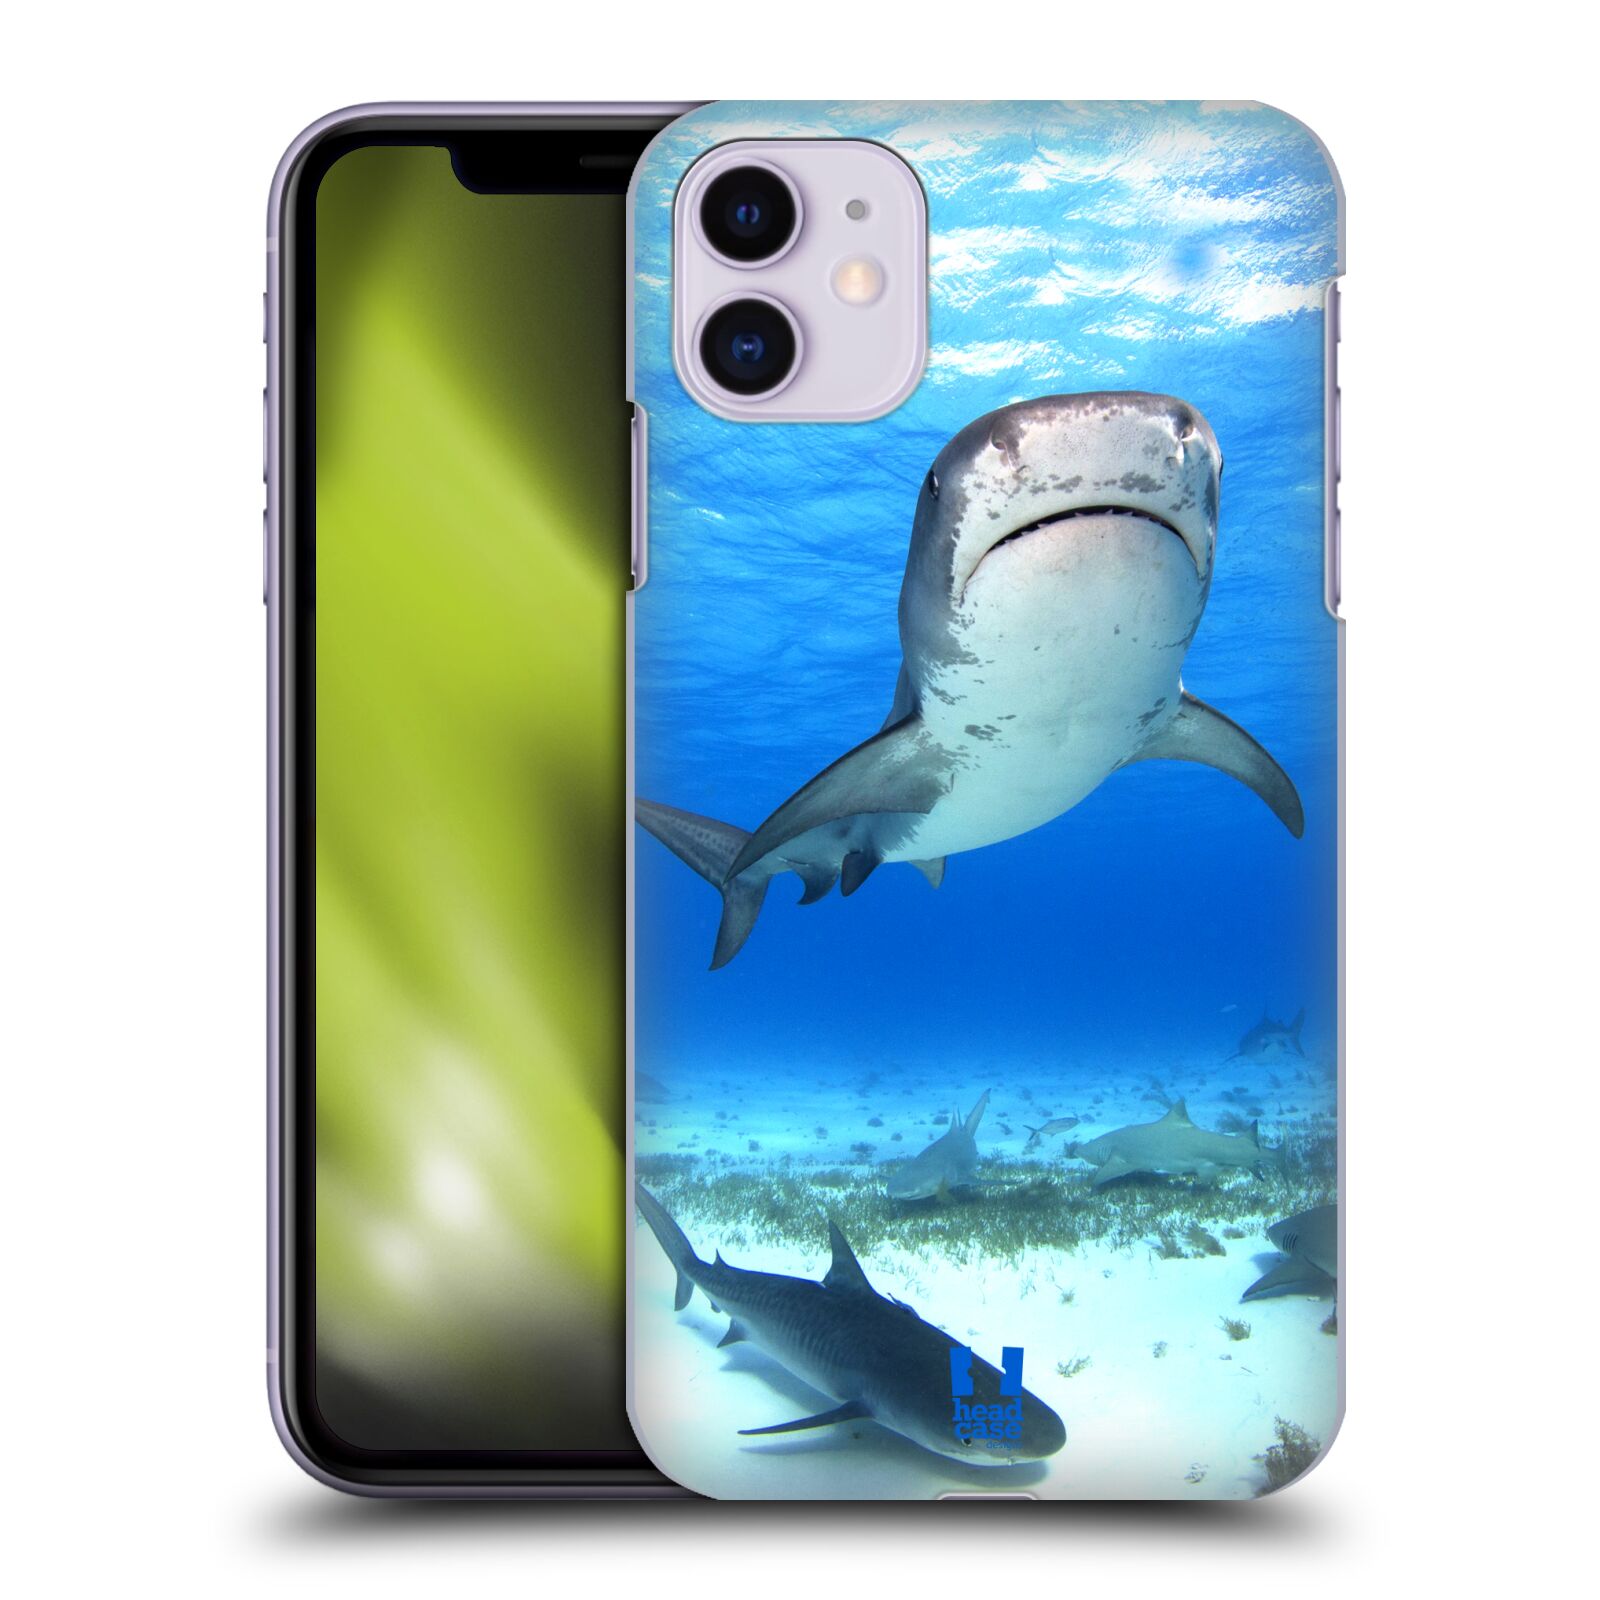 Pouzdro na mobil Apple Iphone 11 - HEAD CASE - vzor slavná zvířata foto žralok tygří